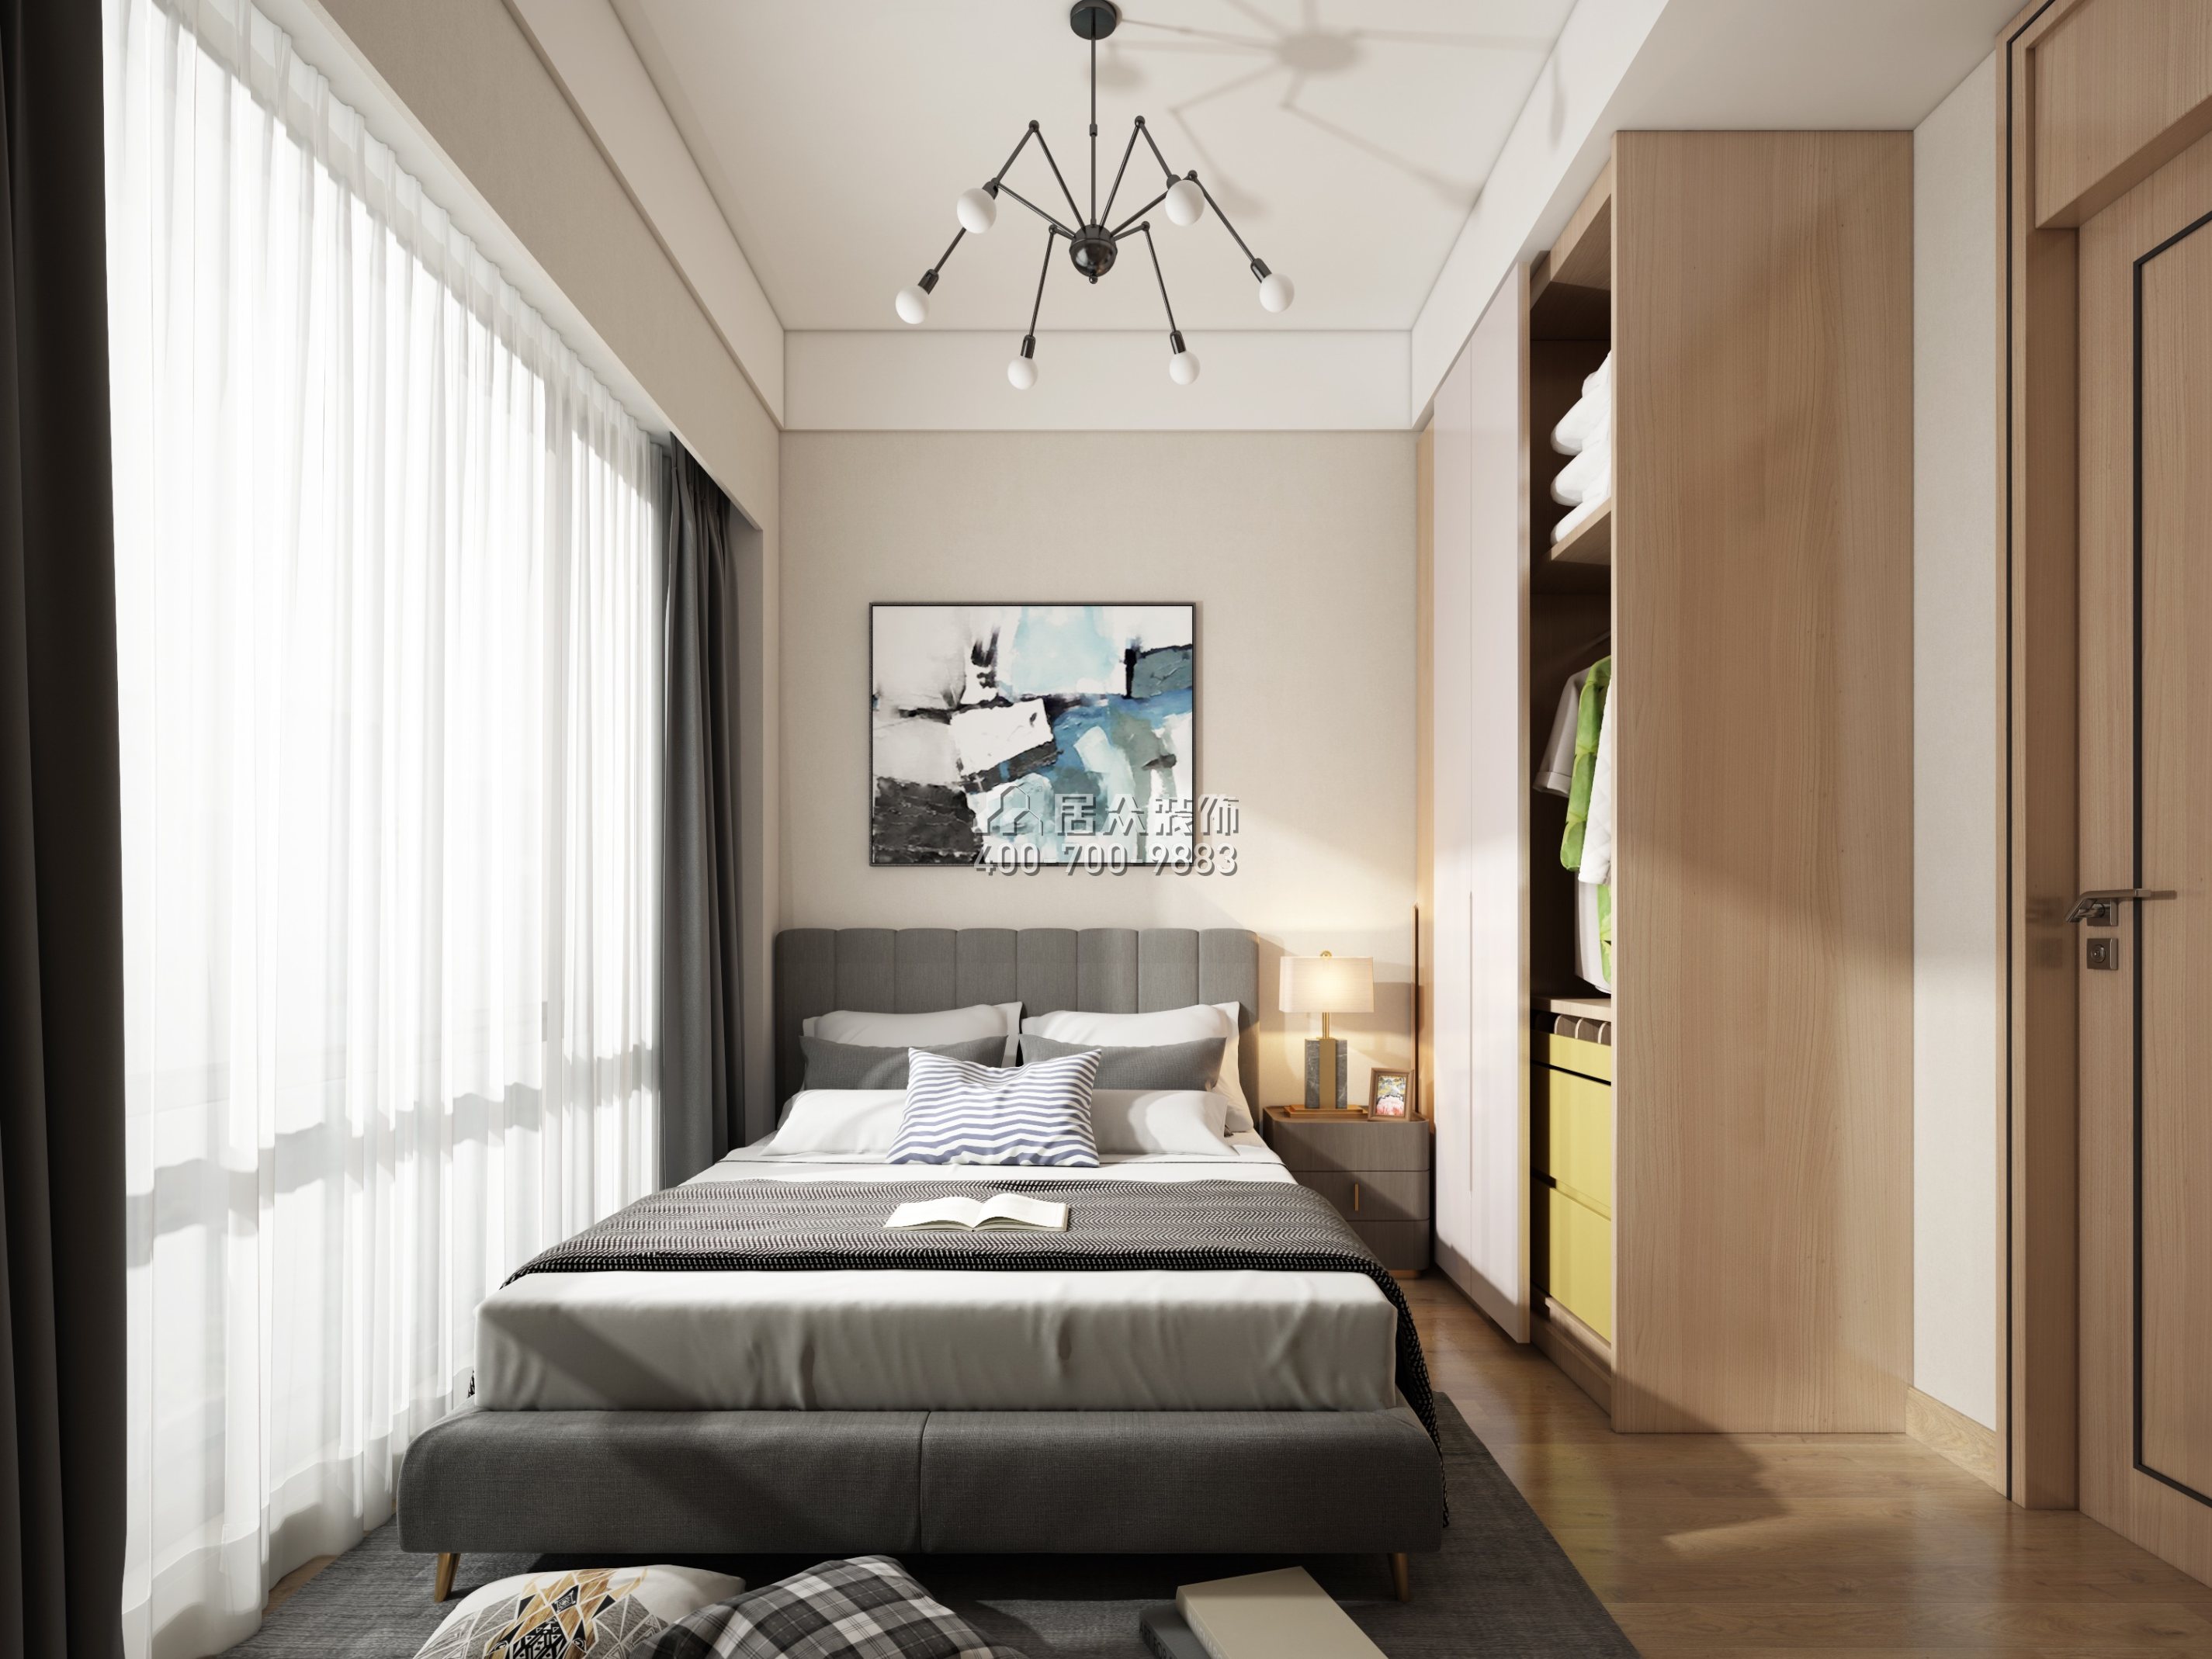 星河银湖谷100平方米现代简约风格平层户型卧室装修效果图